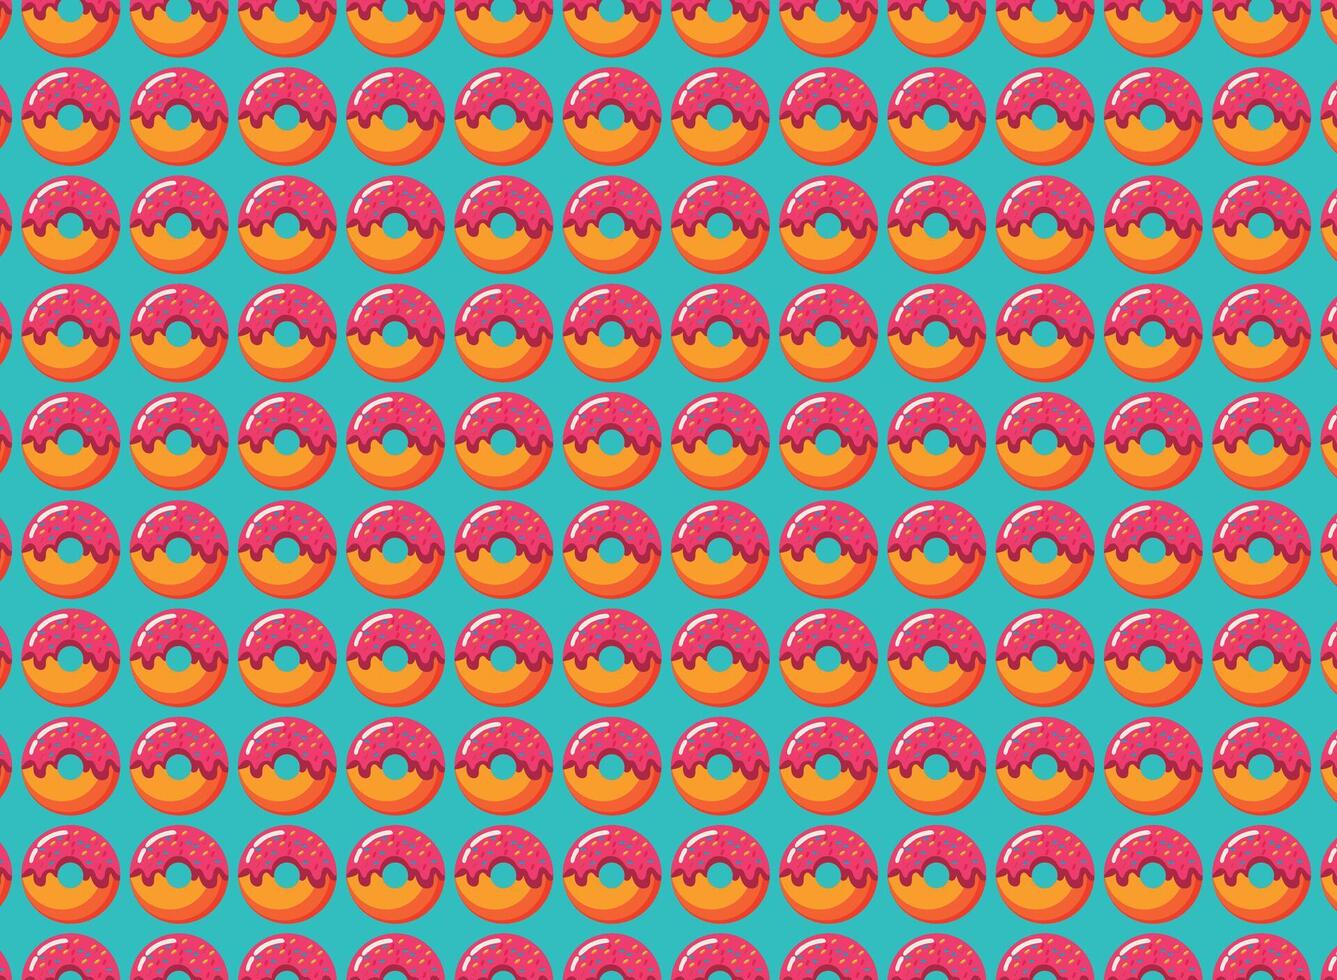 donuts patroon voor achtergronden en texturen, vector